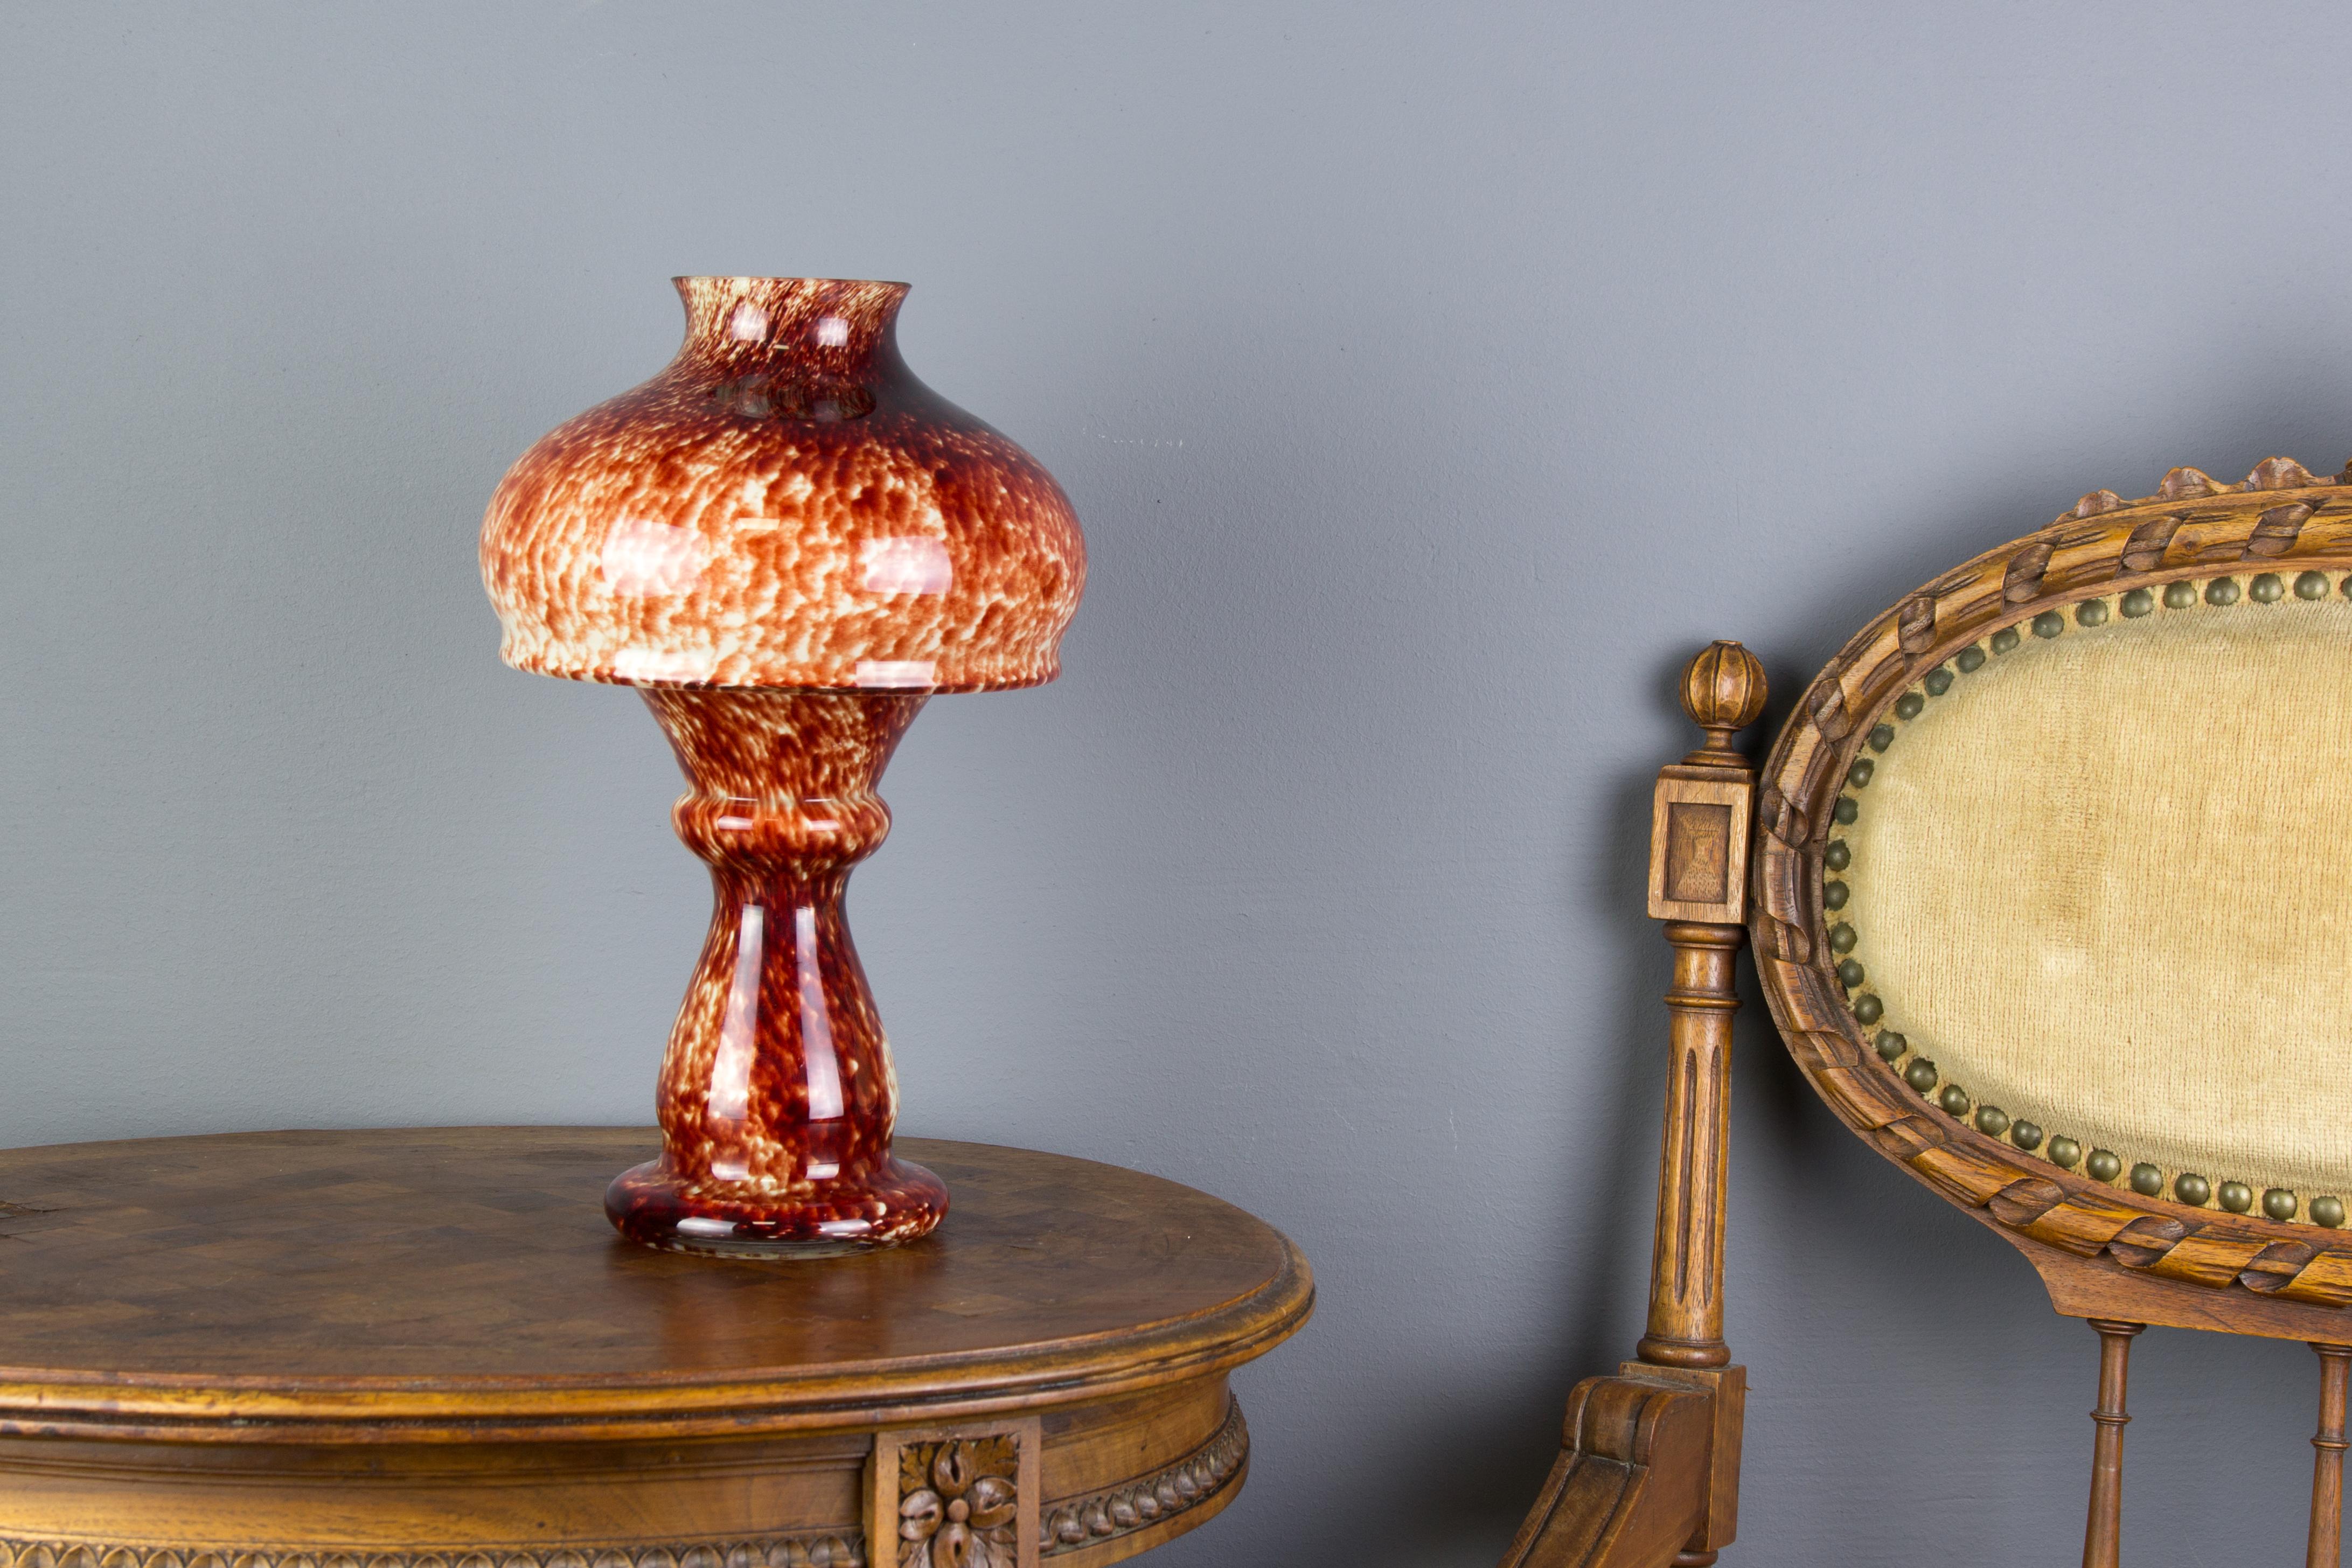 Adorable porte-bougie ou lampe à bougie en verre d'art rouge en forme de champignon, composé de deux parties et avec un intérieur blanc opaque. Peut également être utilisé comme vase.
Dimensions : Hauteur 27 cm / 10.62 in, Diamètre 15 cm / 5.9 in.